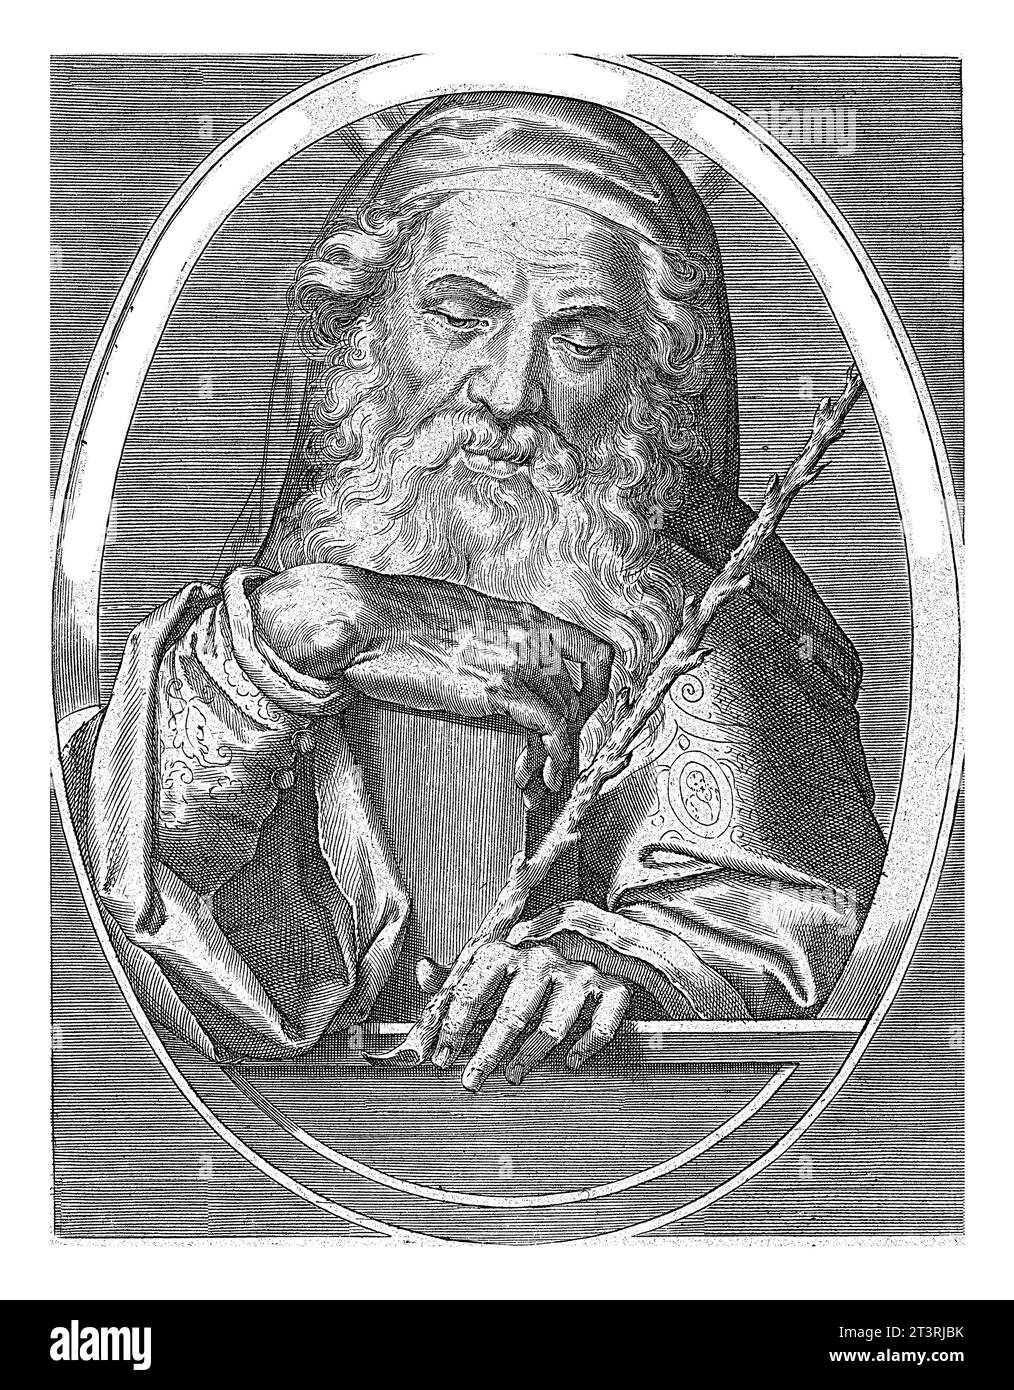 Mozes, Cornelis Galle (I), d'après Jan van der Straet, 1613 Moïse vieux avec les tablettes de pierre et une tige, en ovale avec inscription latine. Rayons o Banque D'Images